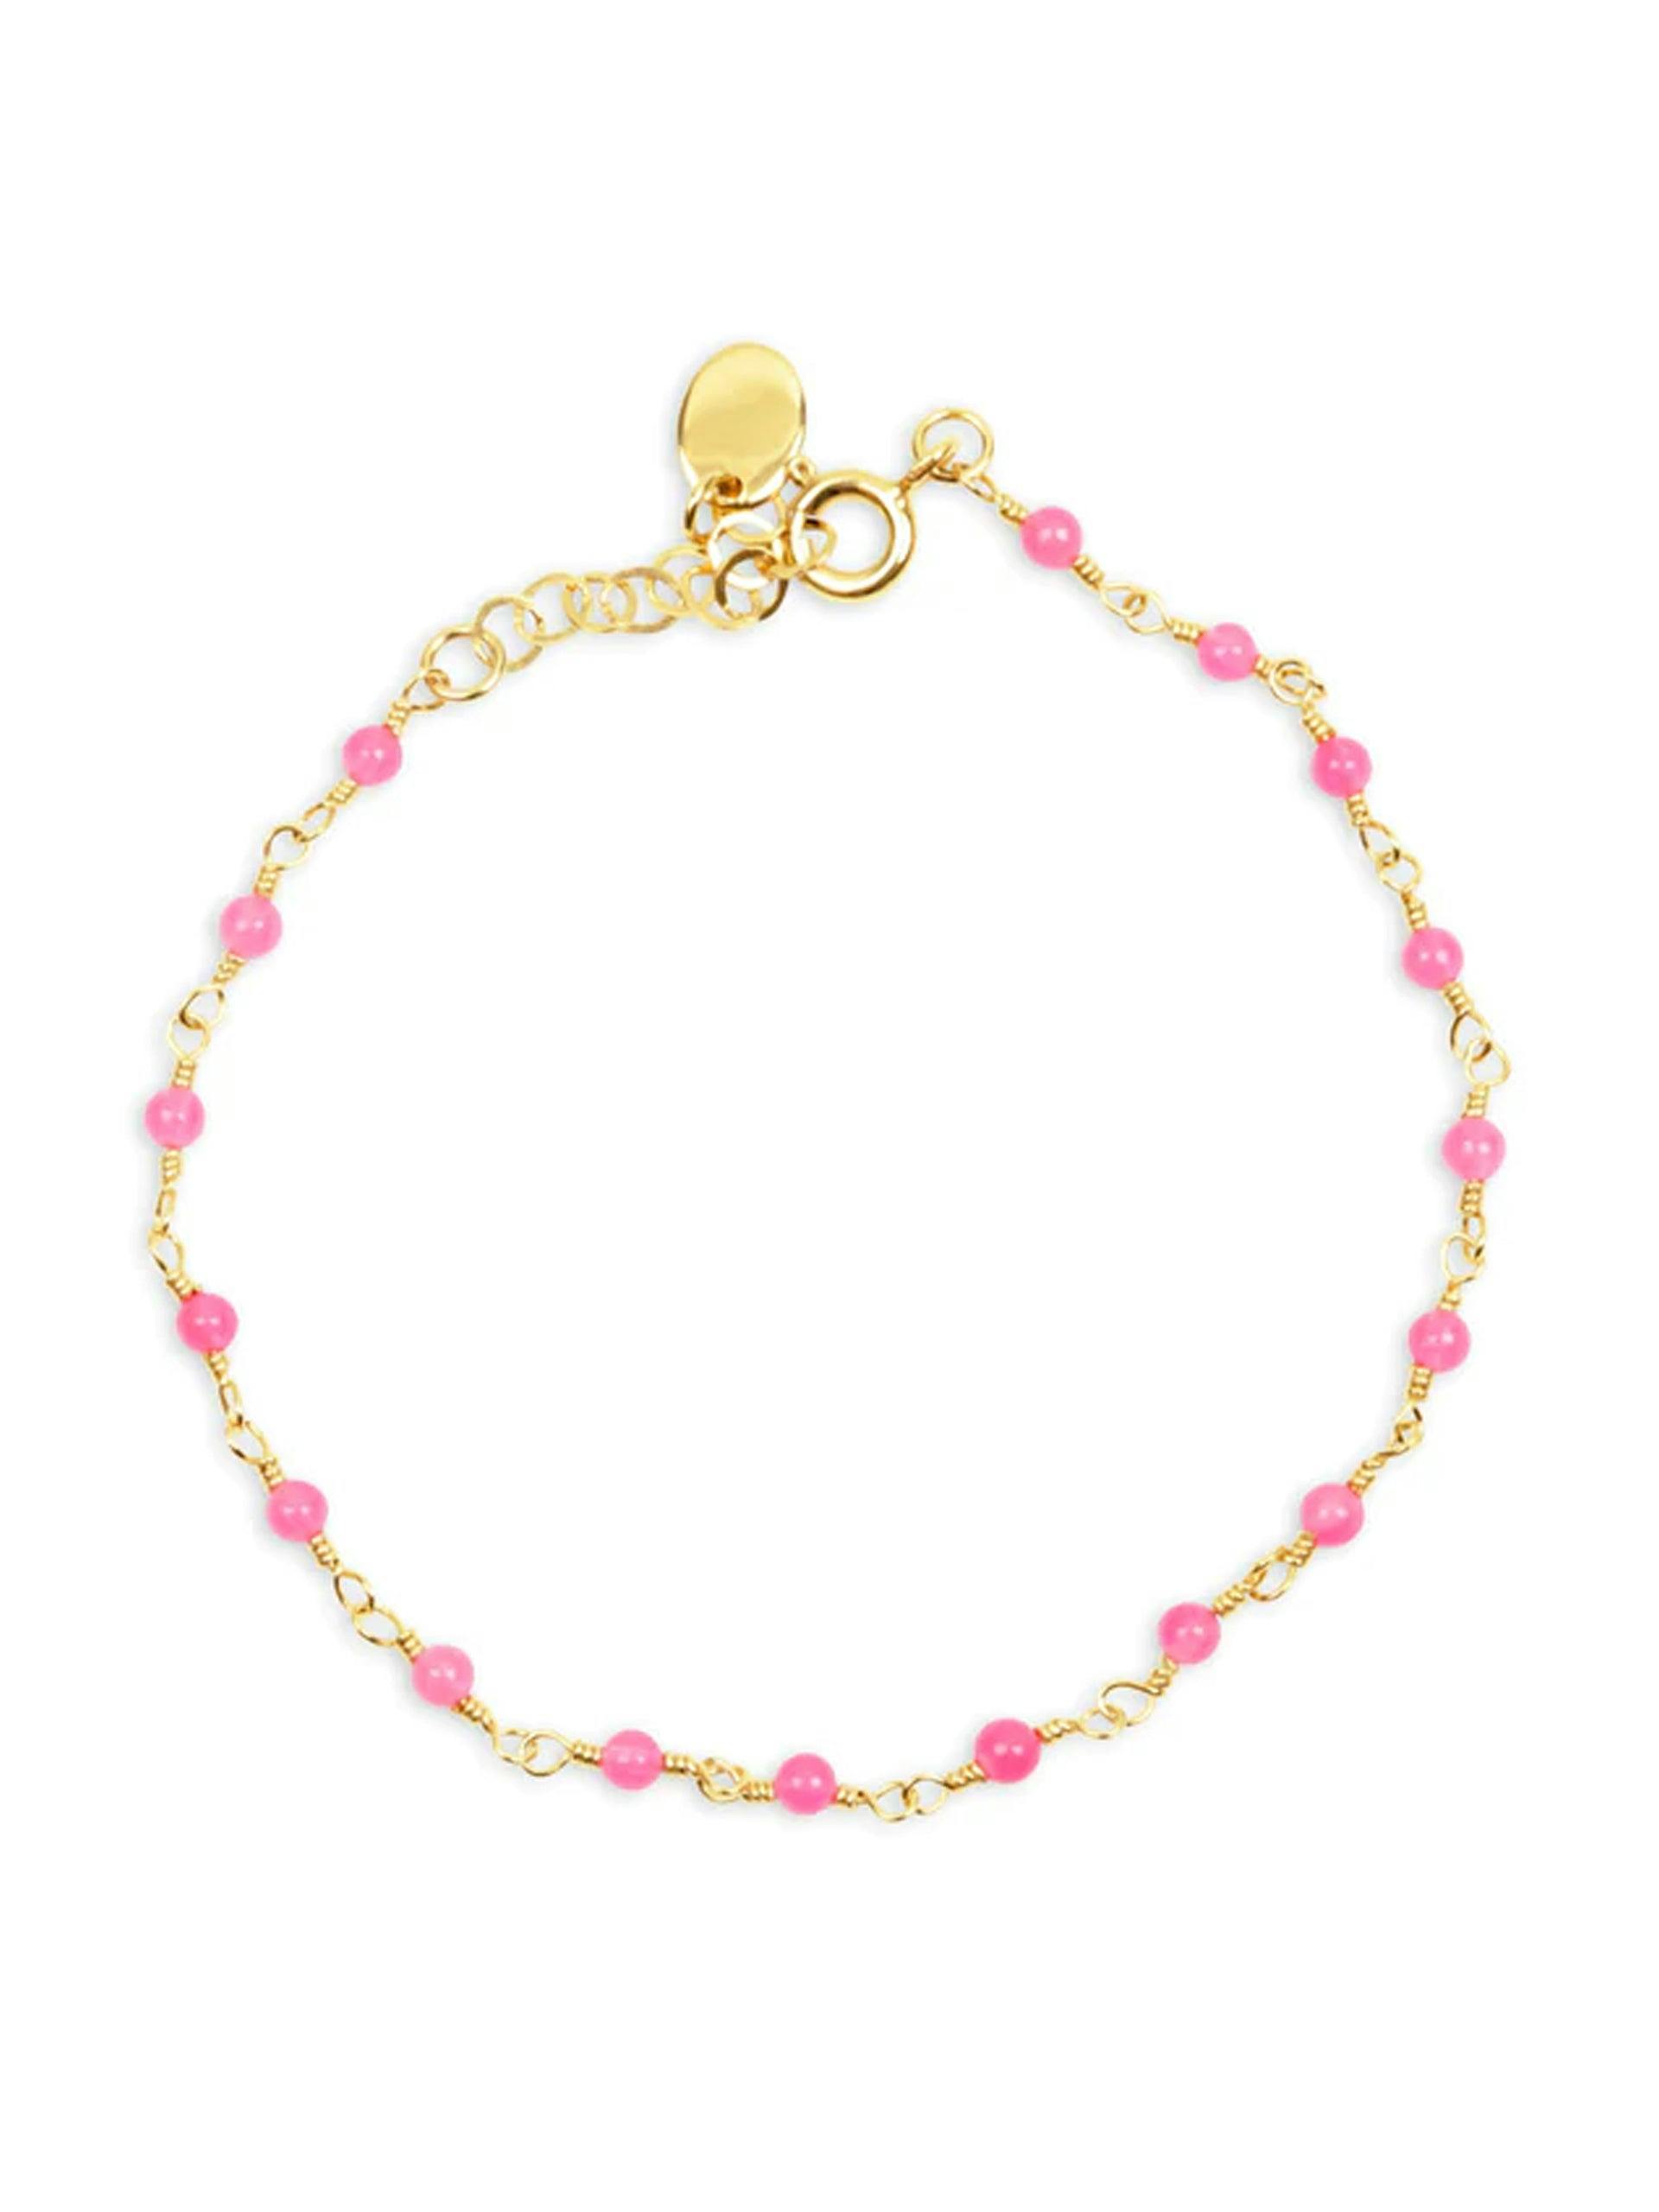 India bracelet in pink